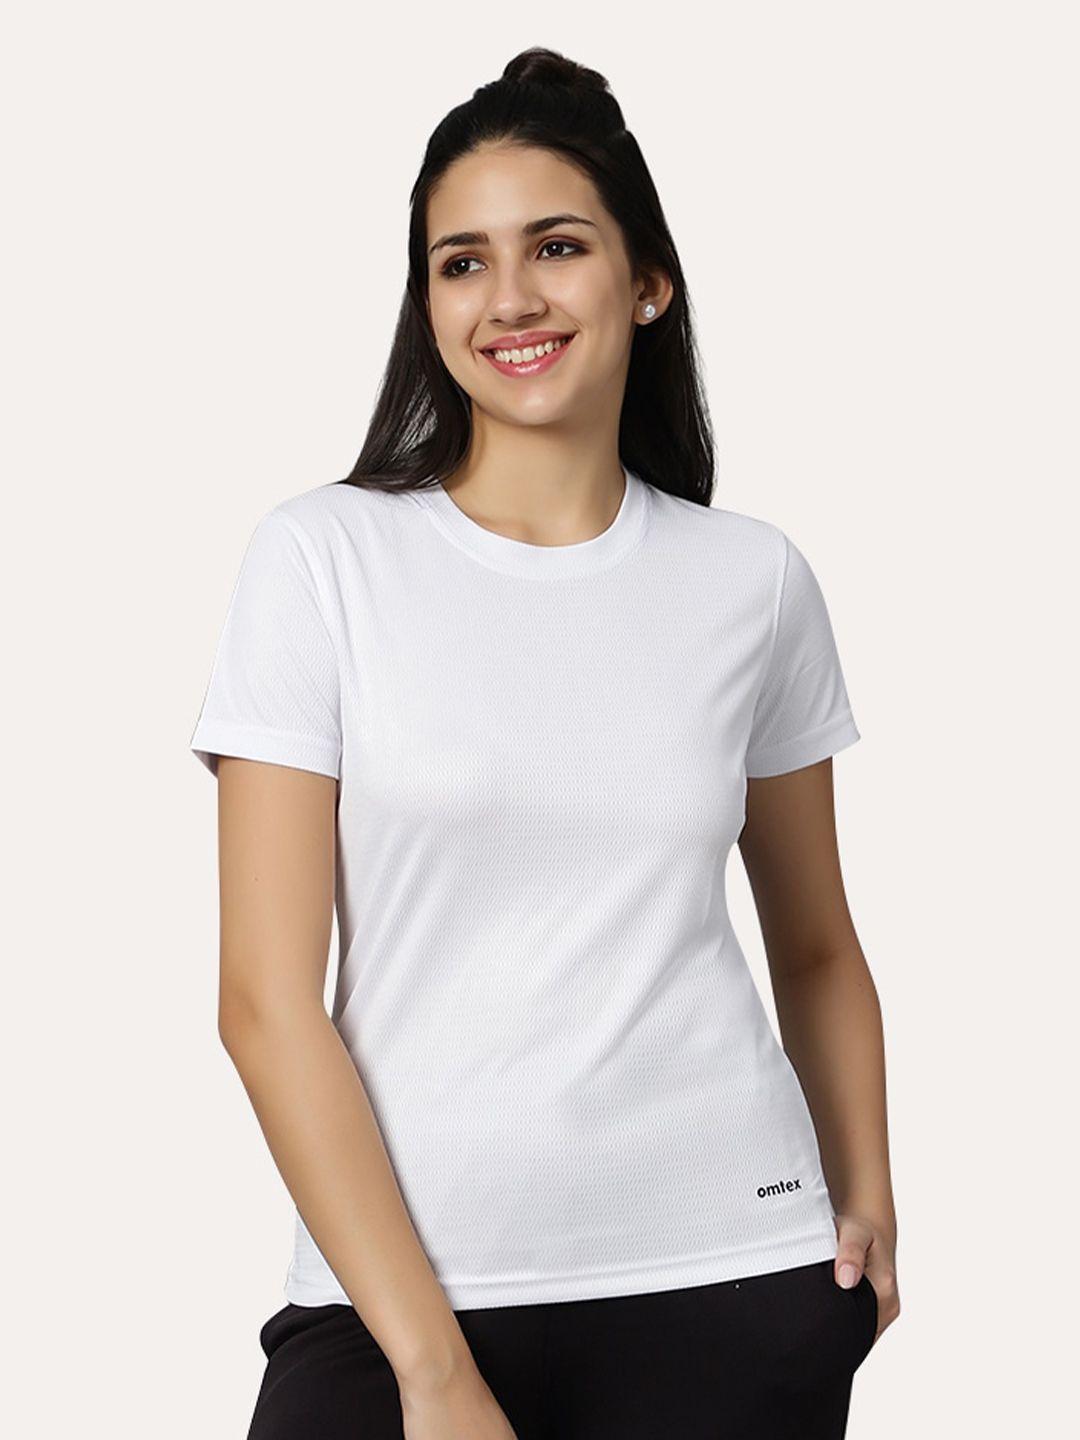 omtex women white pockets t-shirt